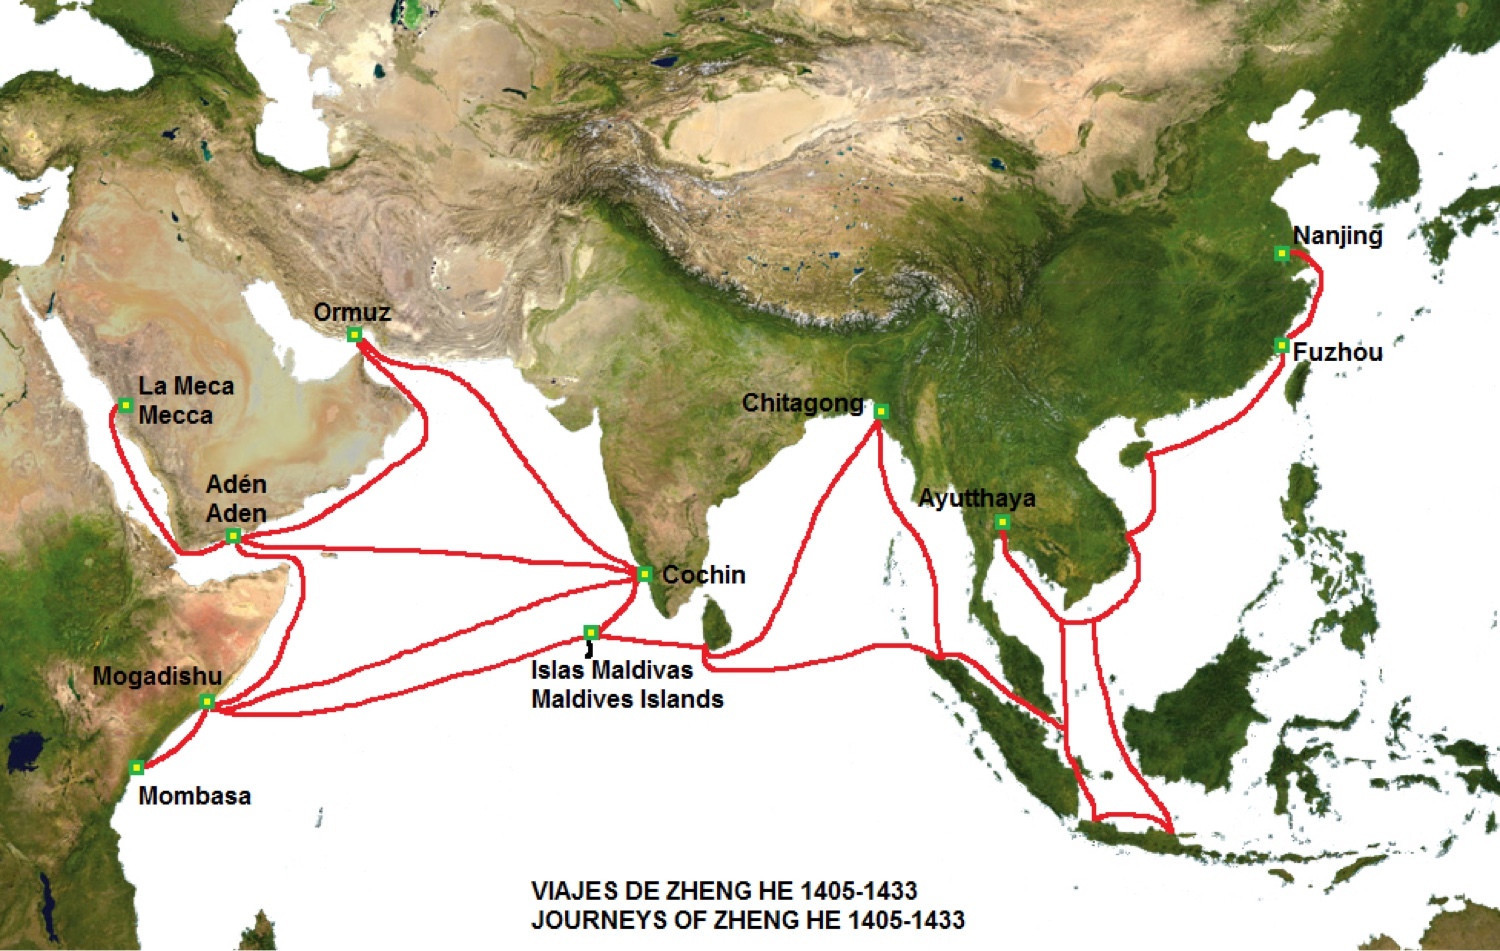 Mapa pravidelných čínských obchodních cest v 15. století